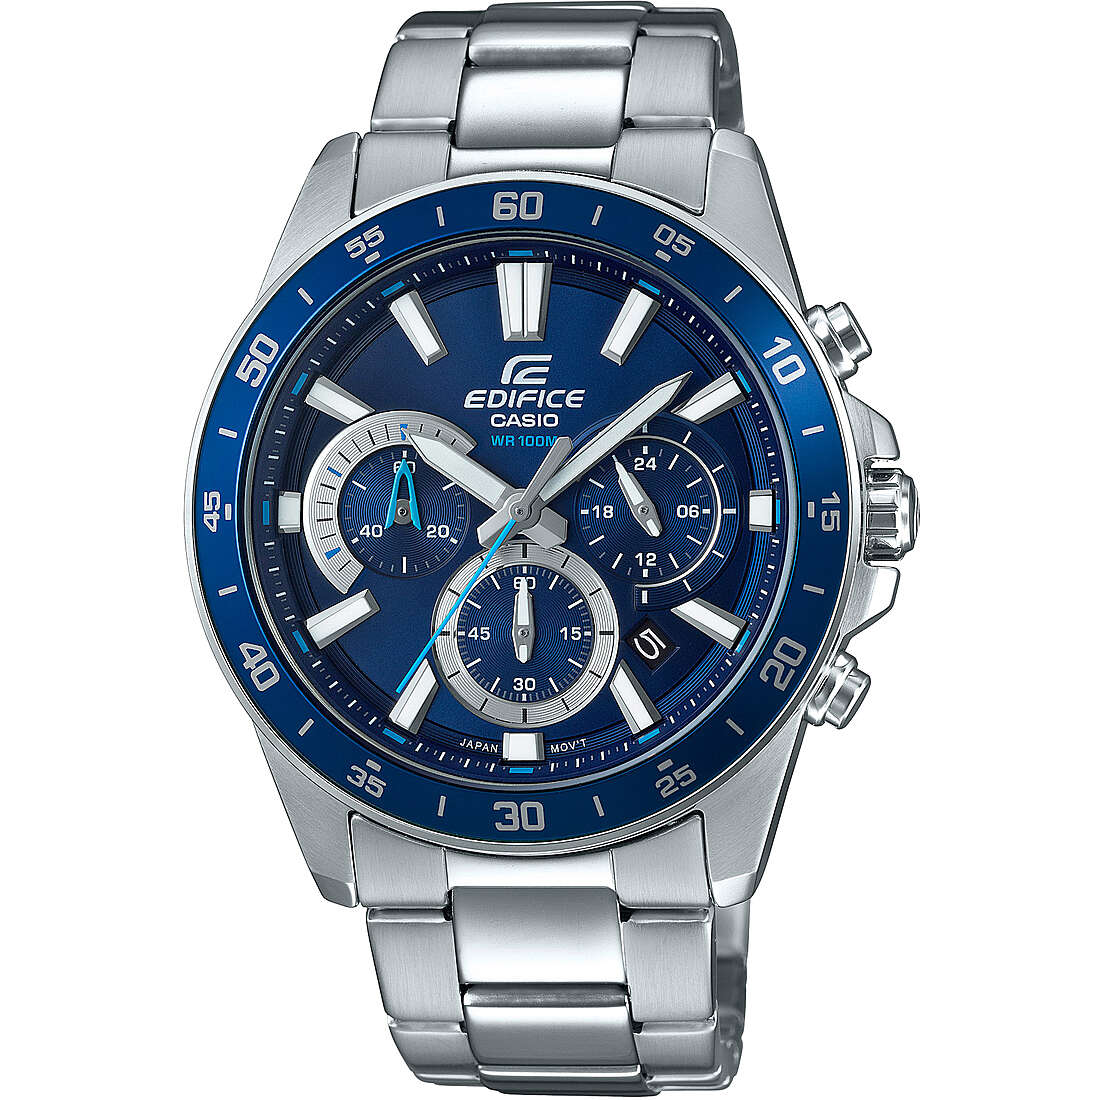 watch digital man Casio Edifice EFV-570D-2AVUEF